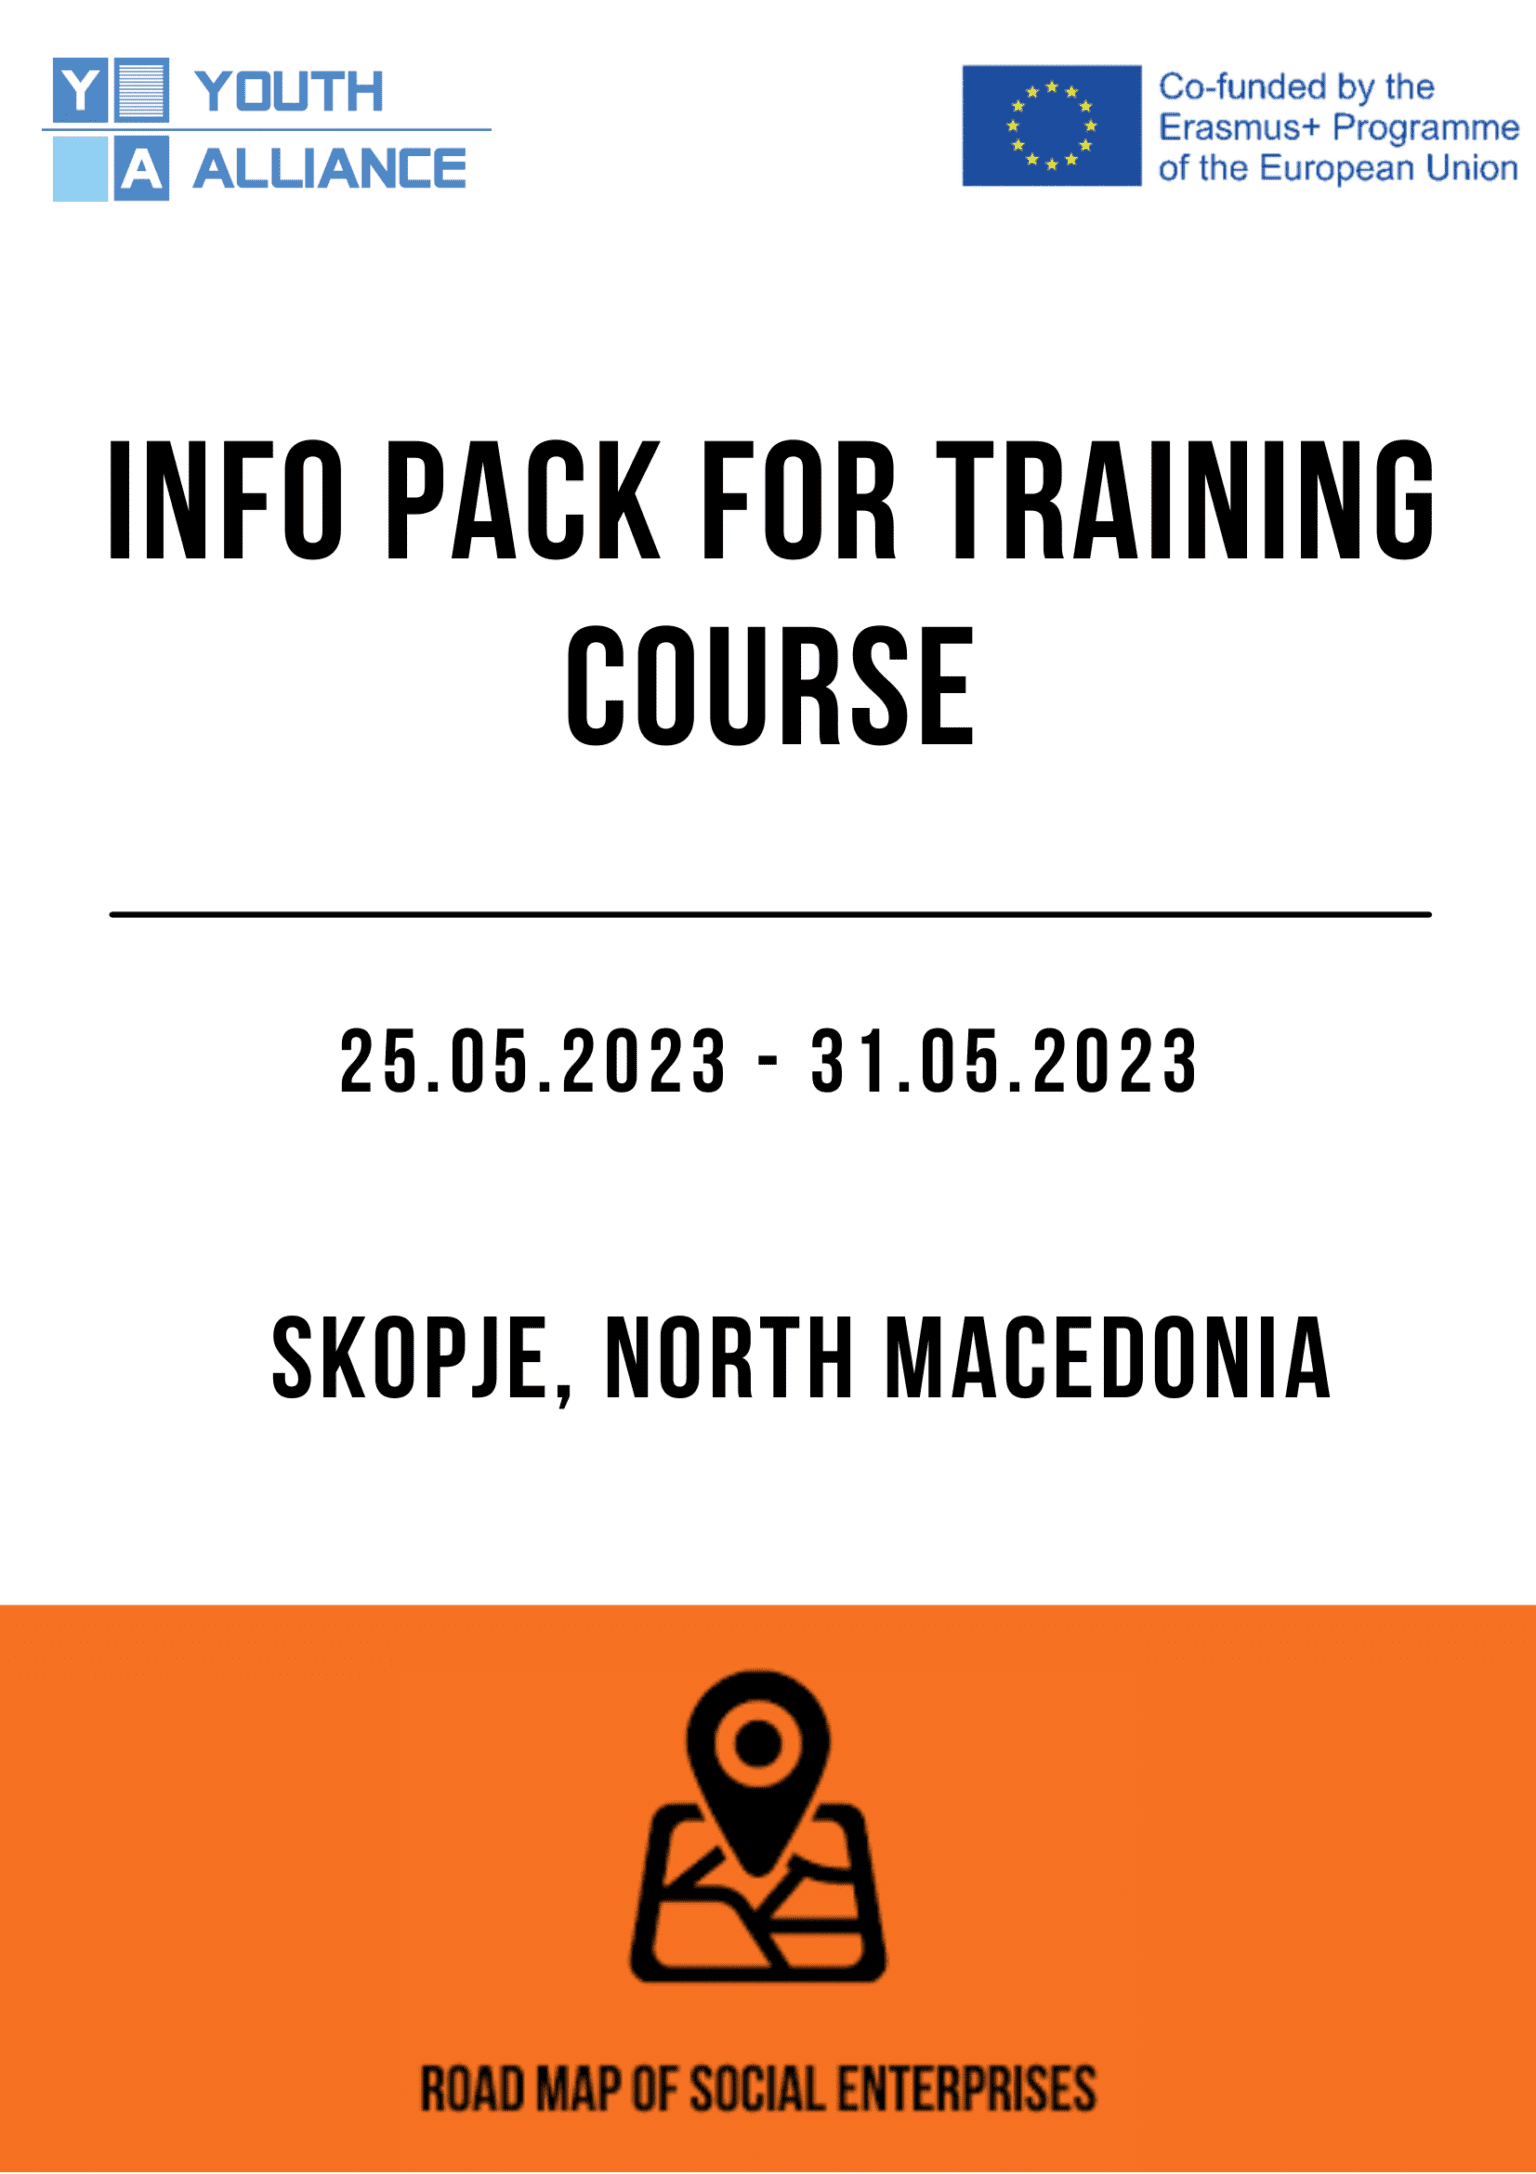 Πρόσκληση για συμμετοχή σε Training Course στα Σκόπια της Βόρειας Μακεδονίας!